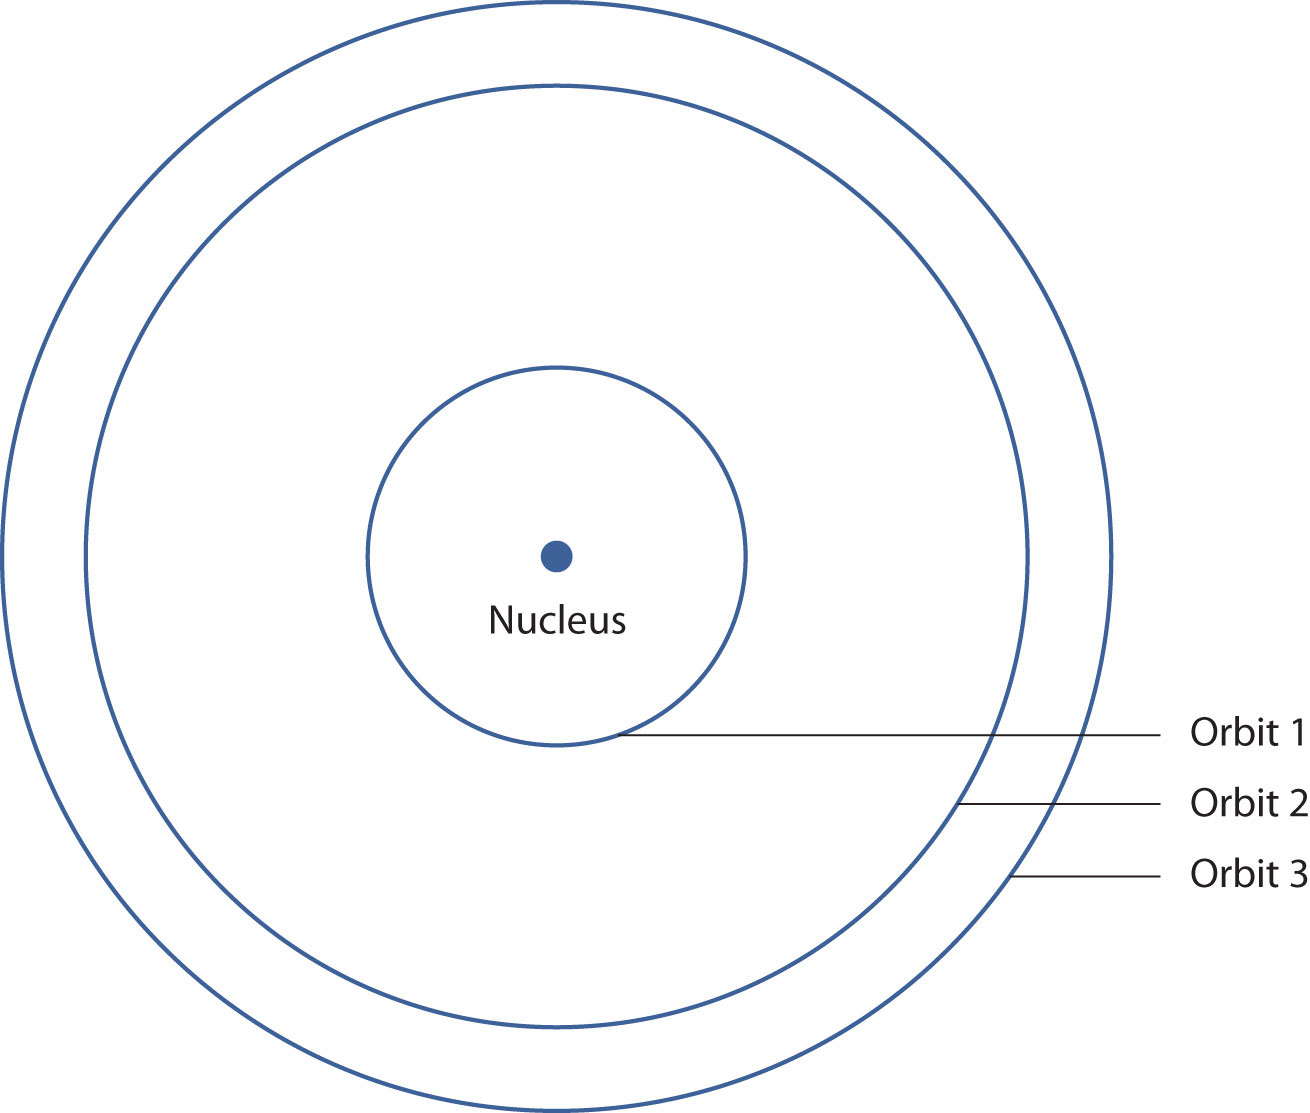 En este modelo, muestra el núcleo en el centro y 3 órbitas que lo rodean.